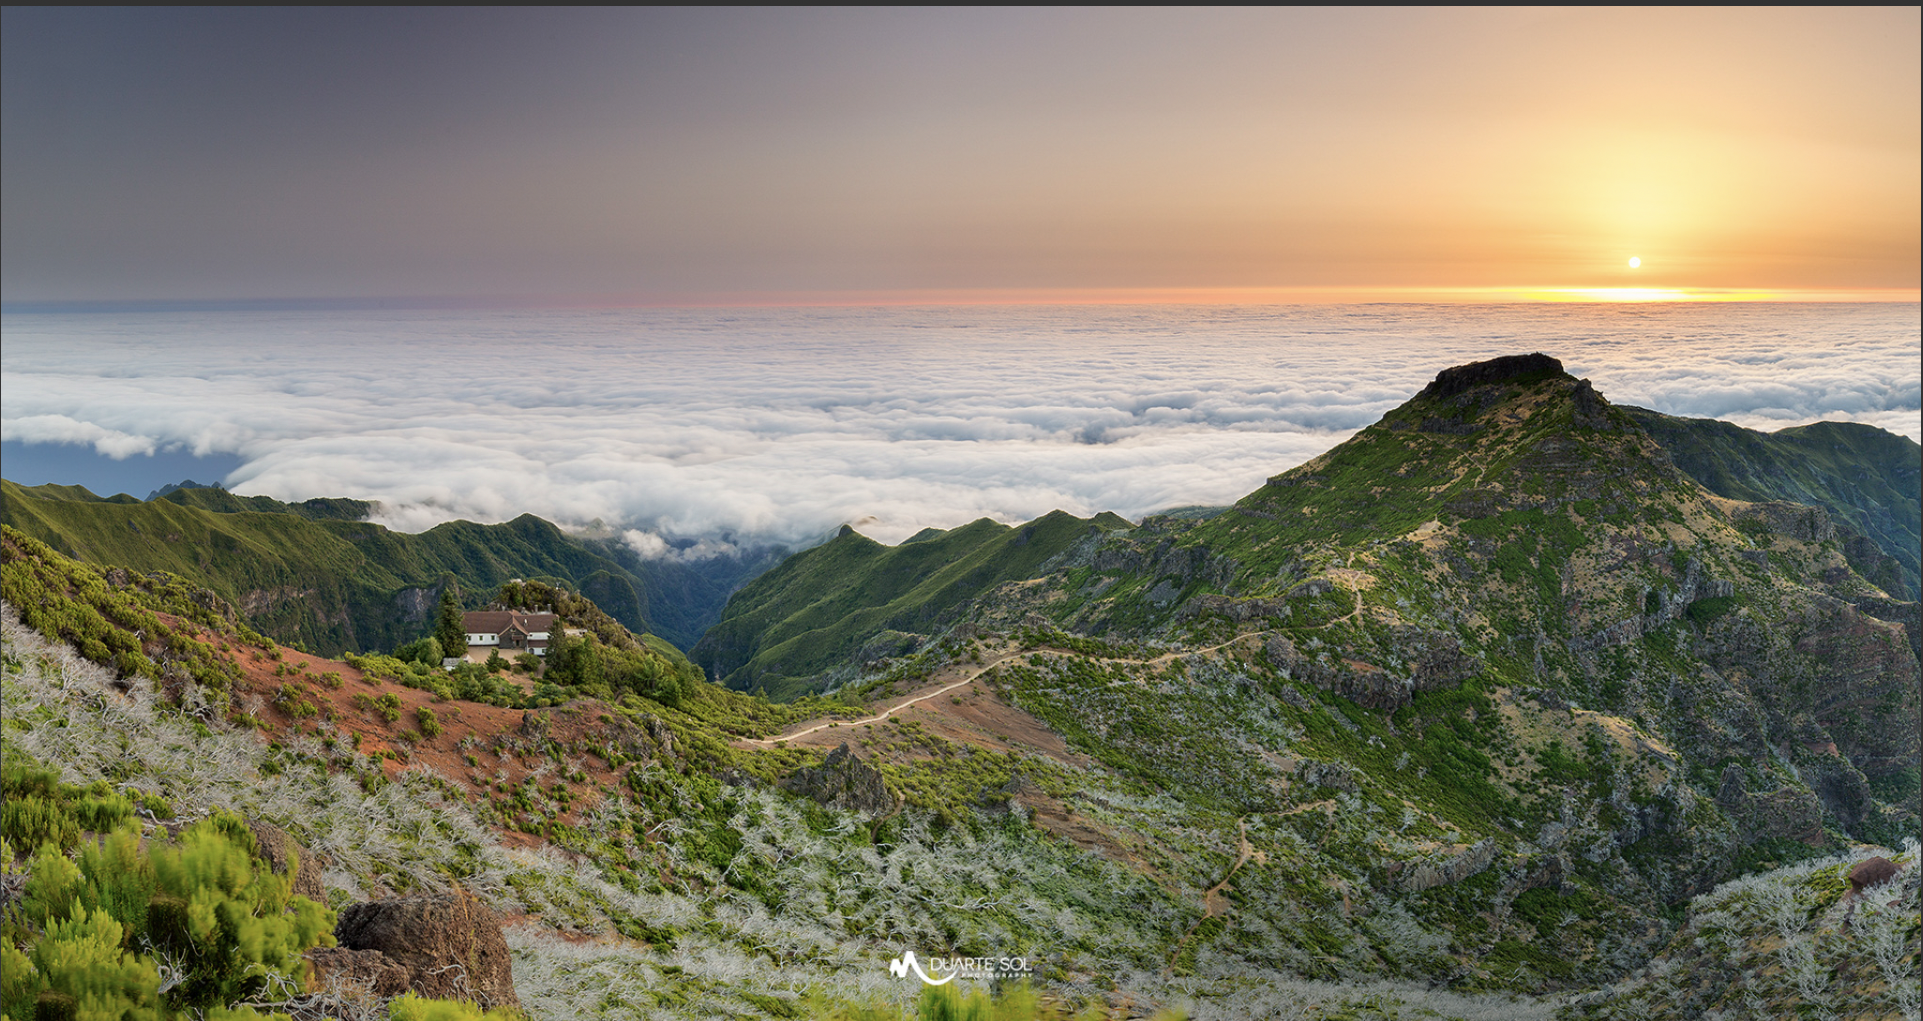 Incantevole Madeira: catturare la bellezza dell'isola(12)